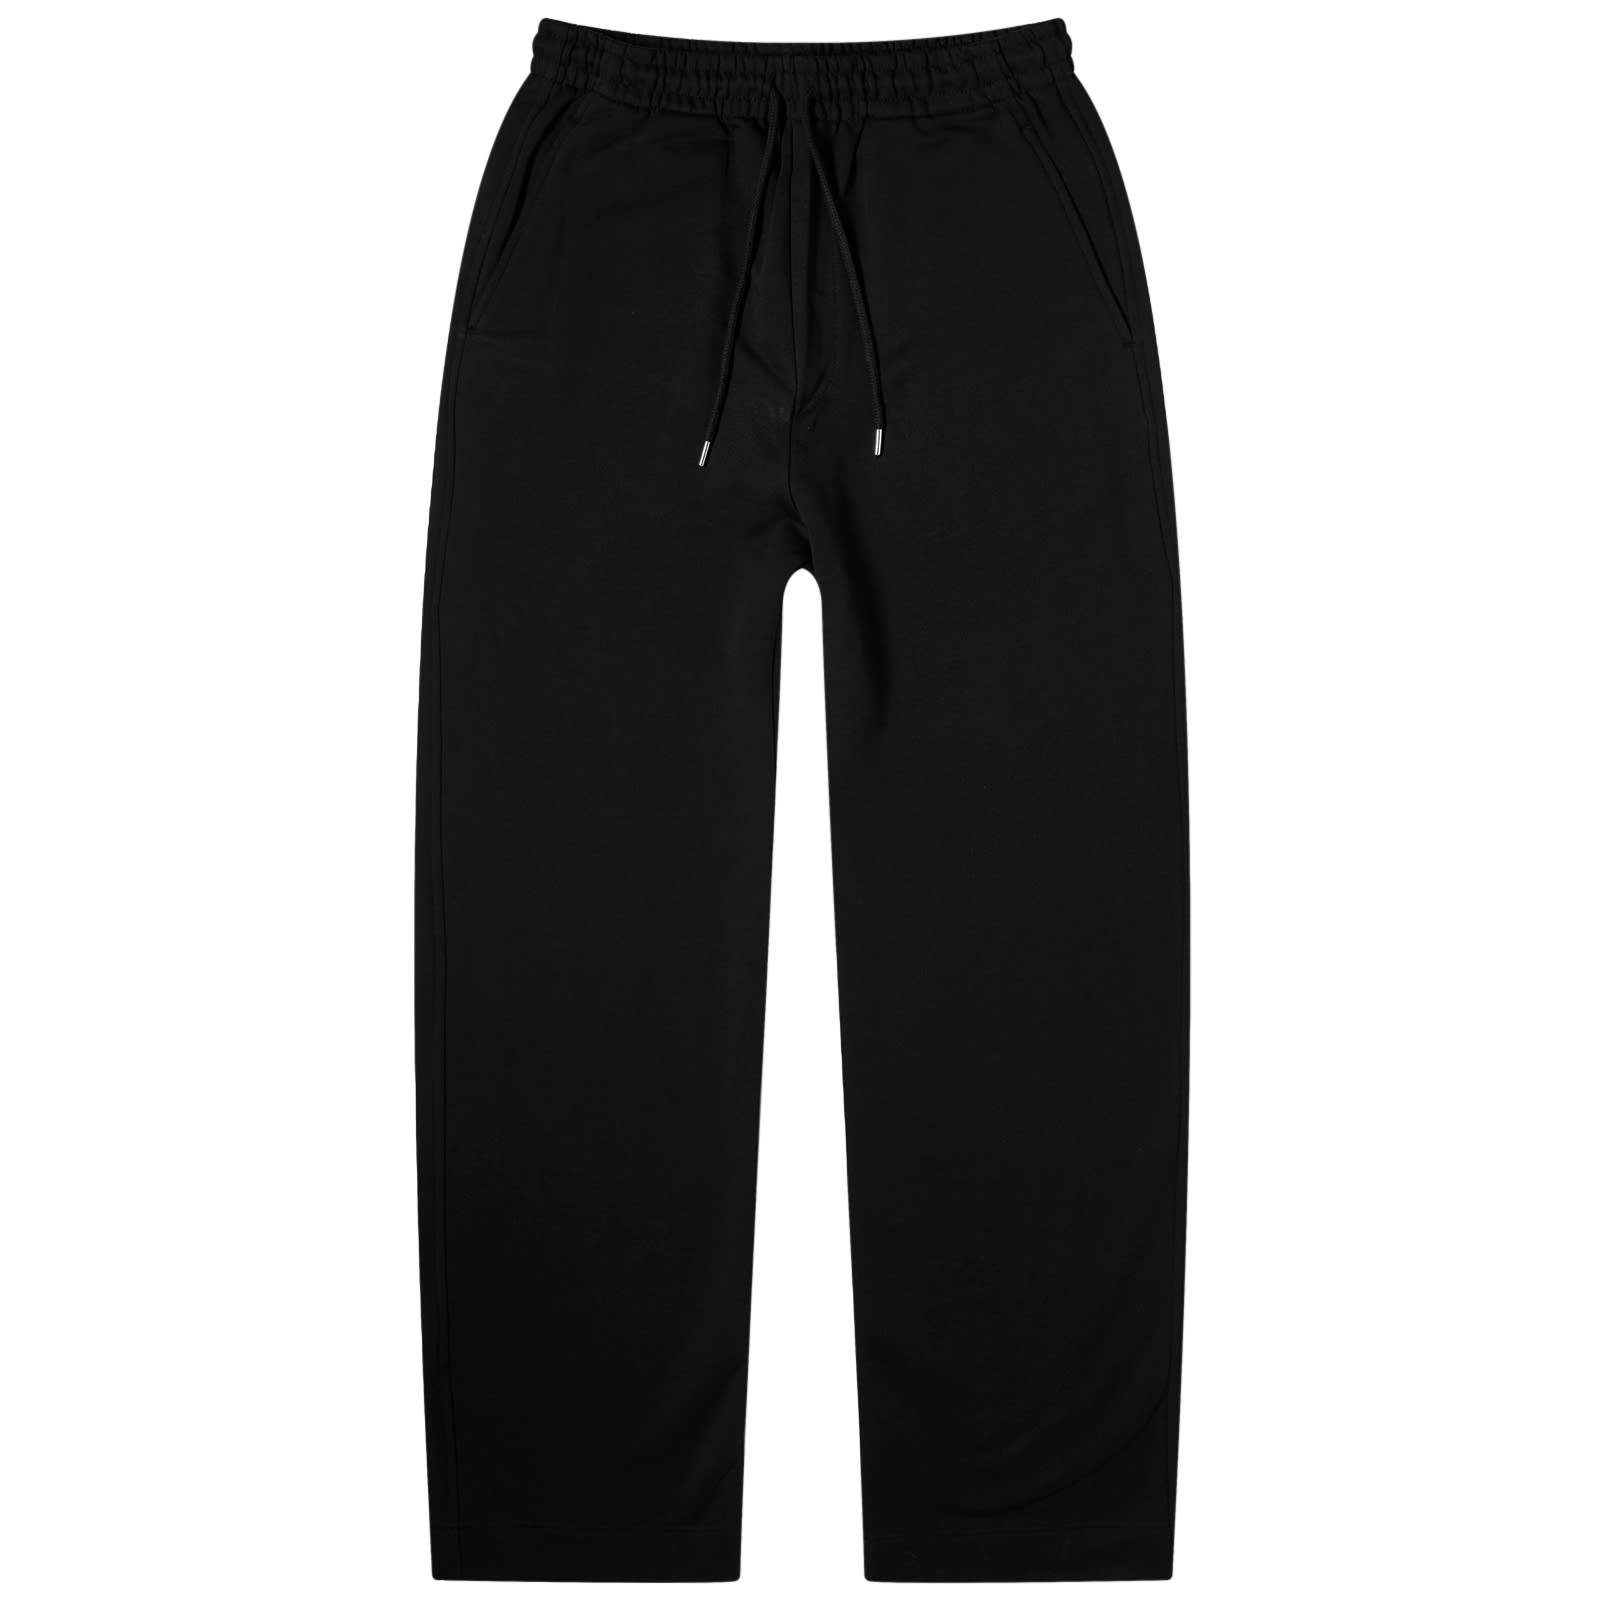 шорты для плавания dries van noten phibbs цвет petrol Спортивные брюки Dries Van Noten Hamer, черный